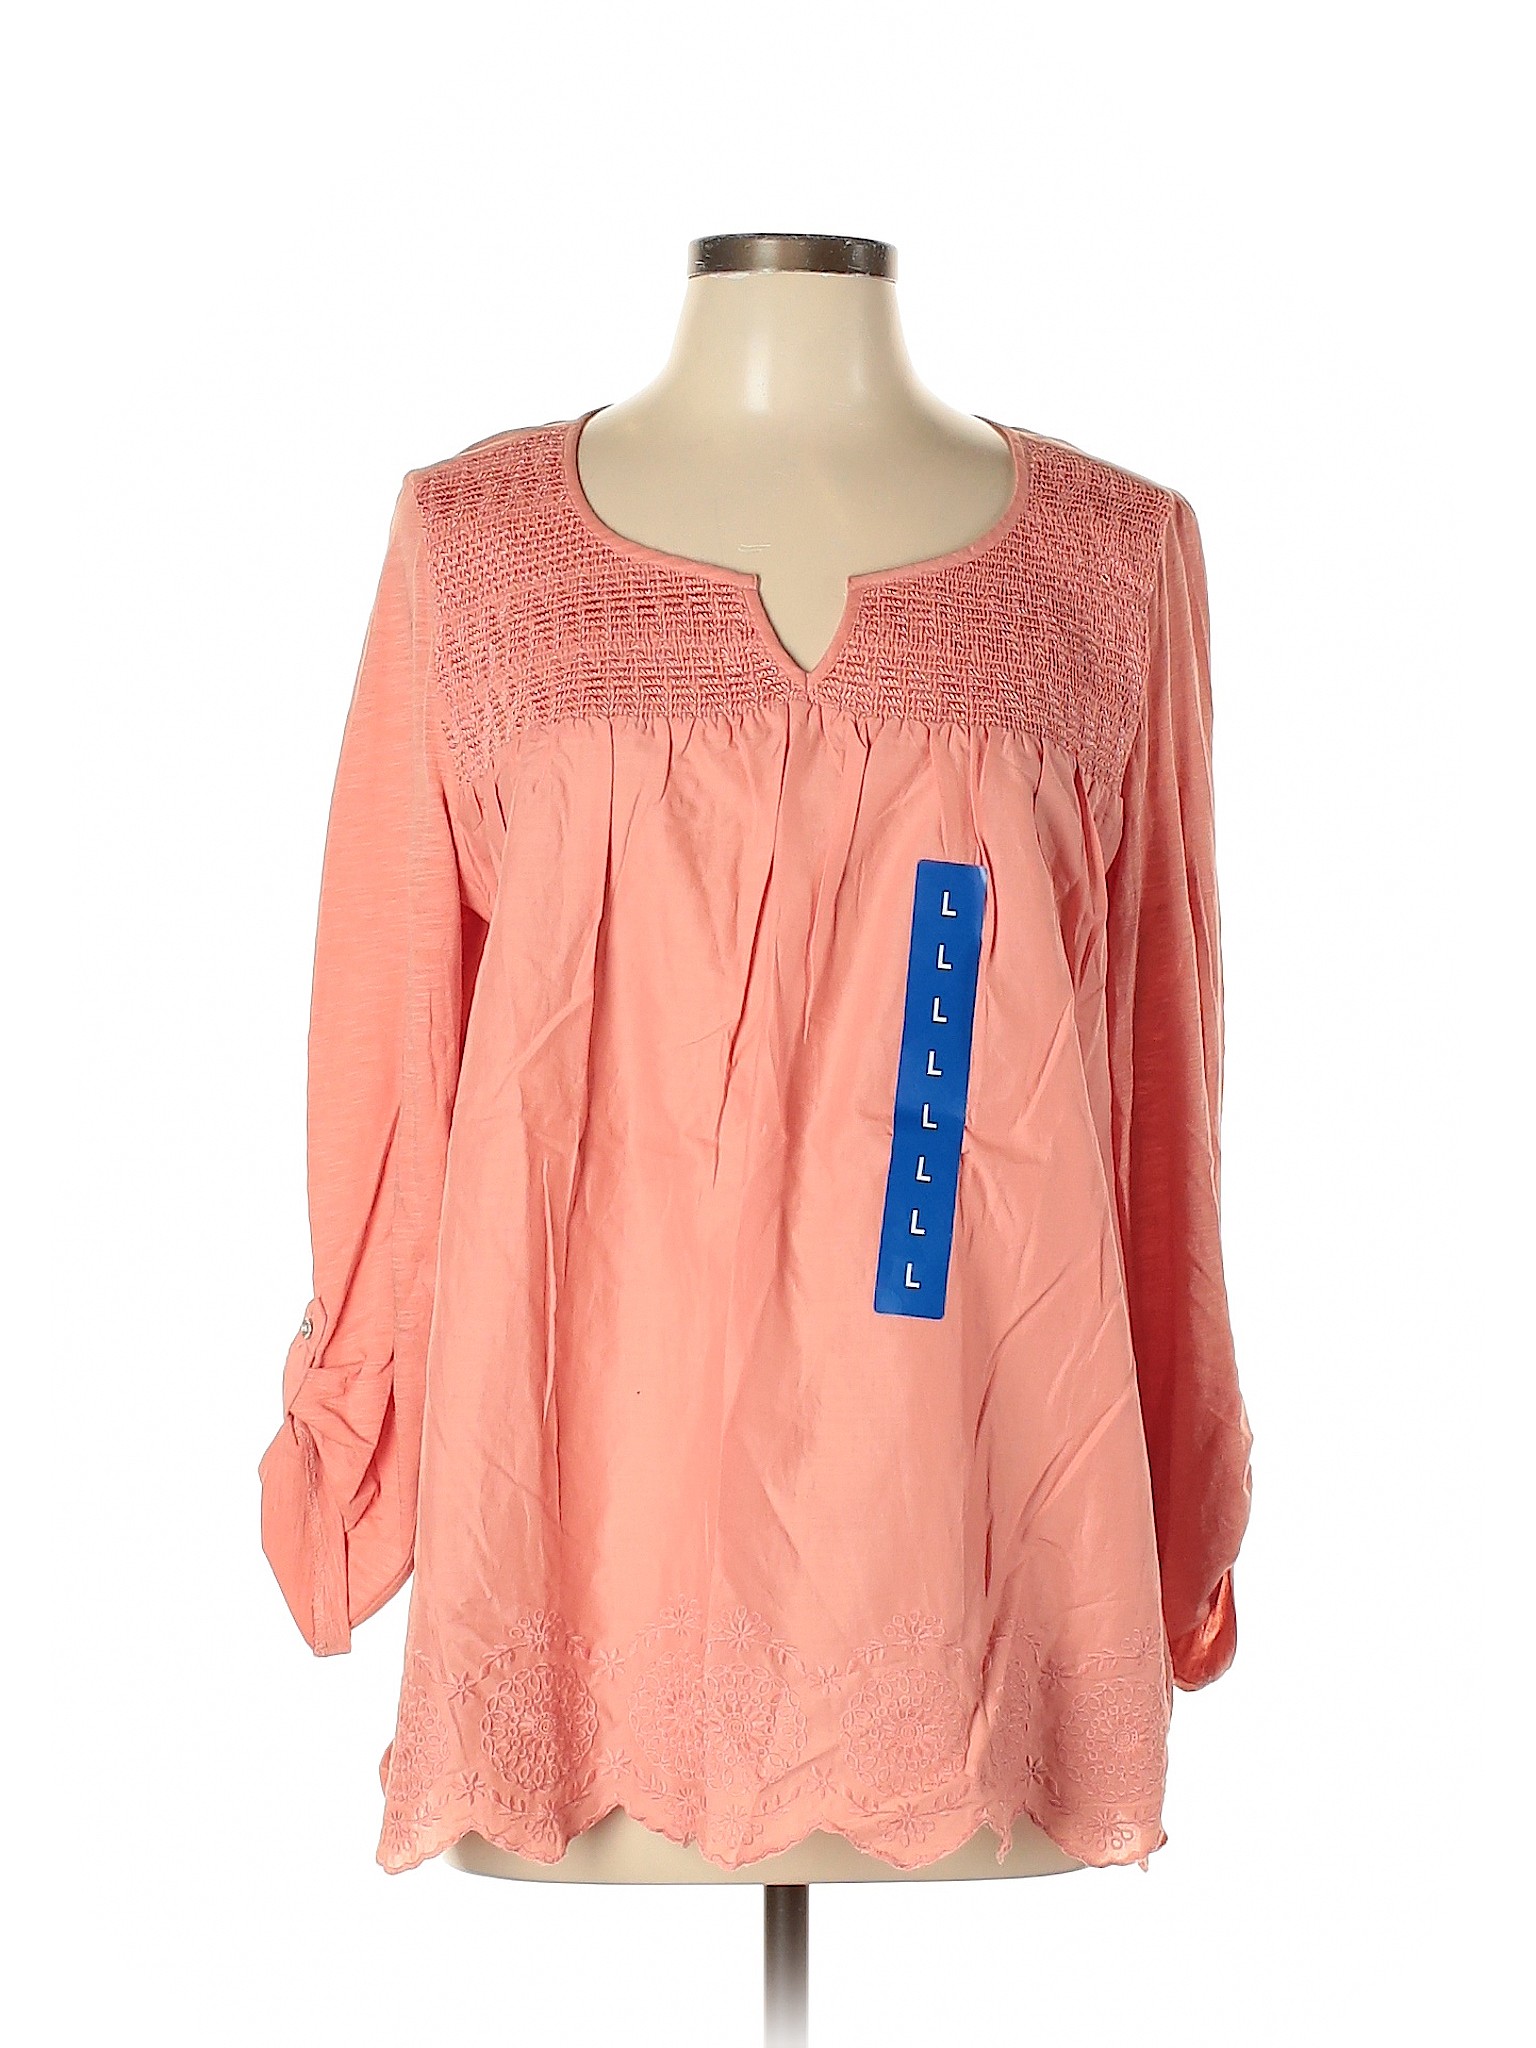 NWT Gloria Vanderbilt Women Pink 3/4 Sleeve Blouse L | eBay